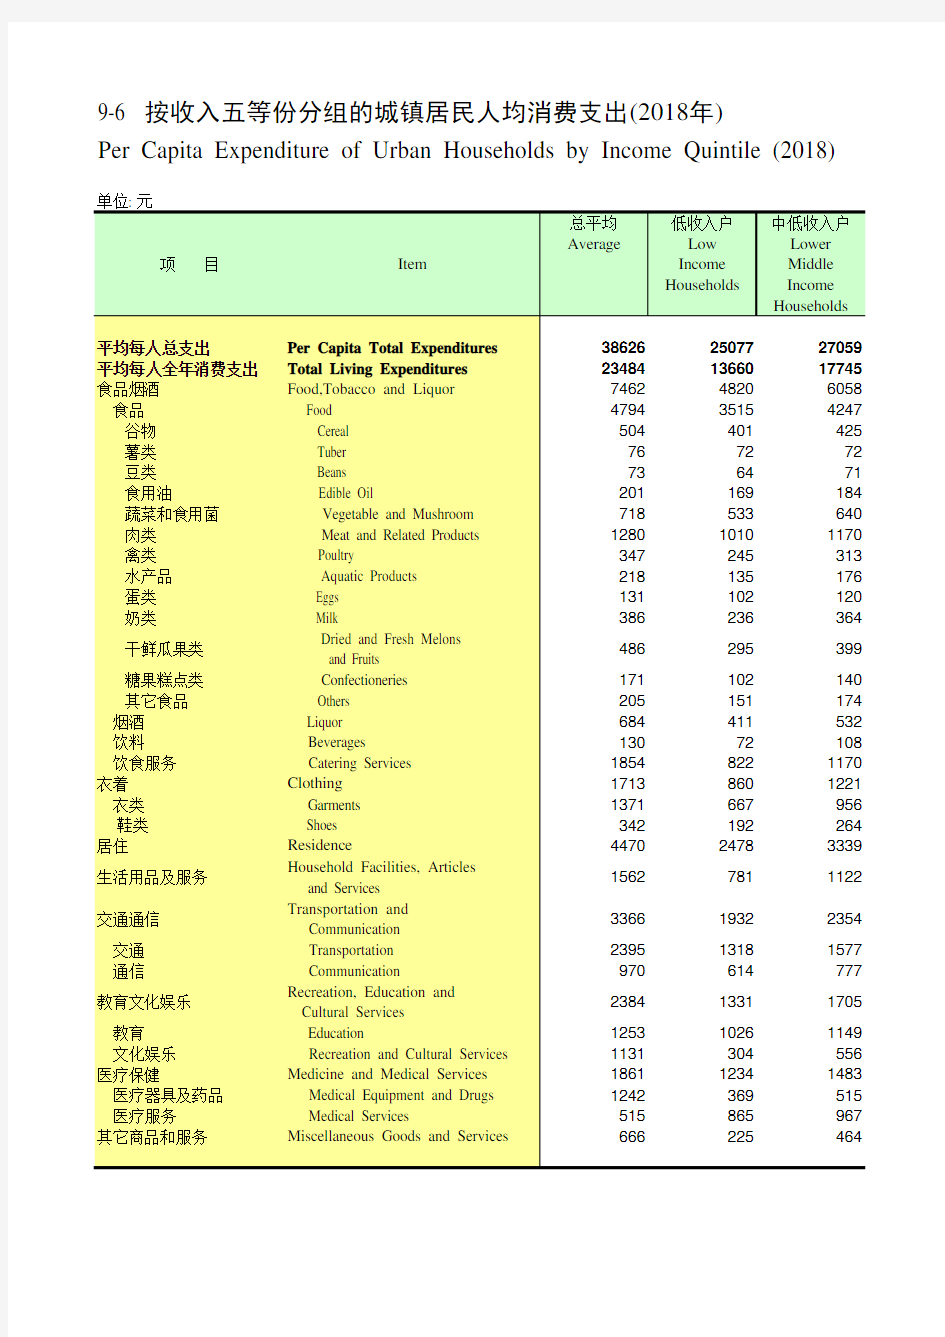 四川社会发展经济数据：9-6_按收入五等份分组的城镇居民人均消费支出(2018年)